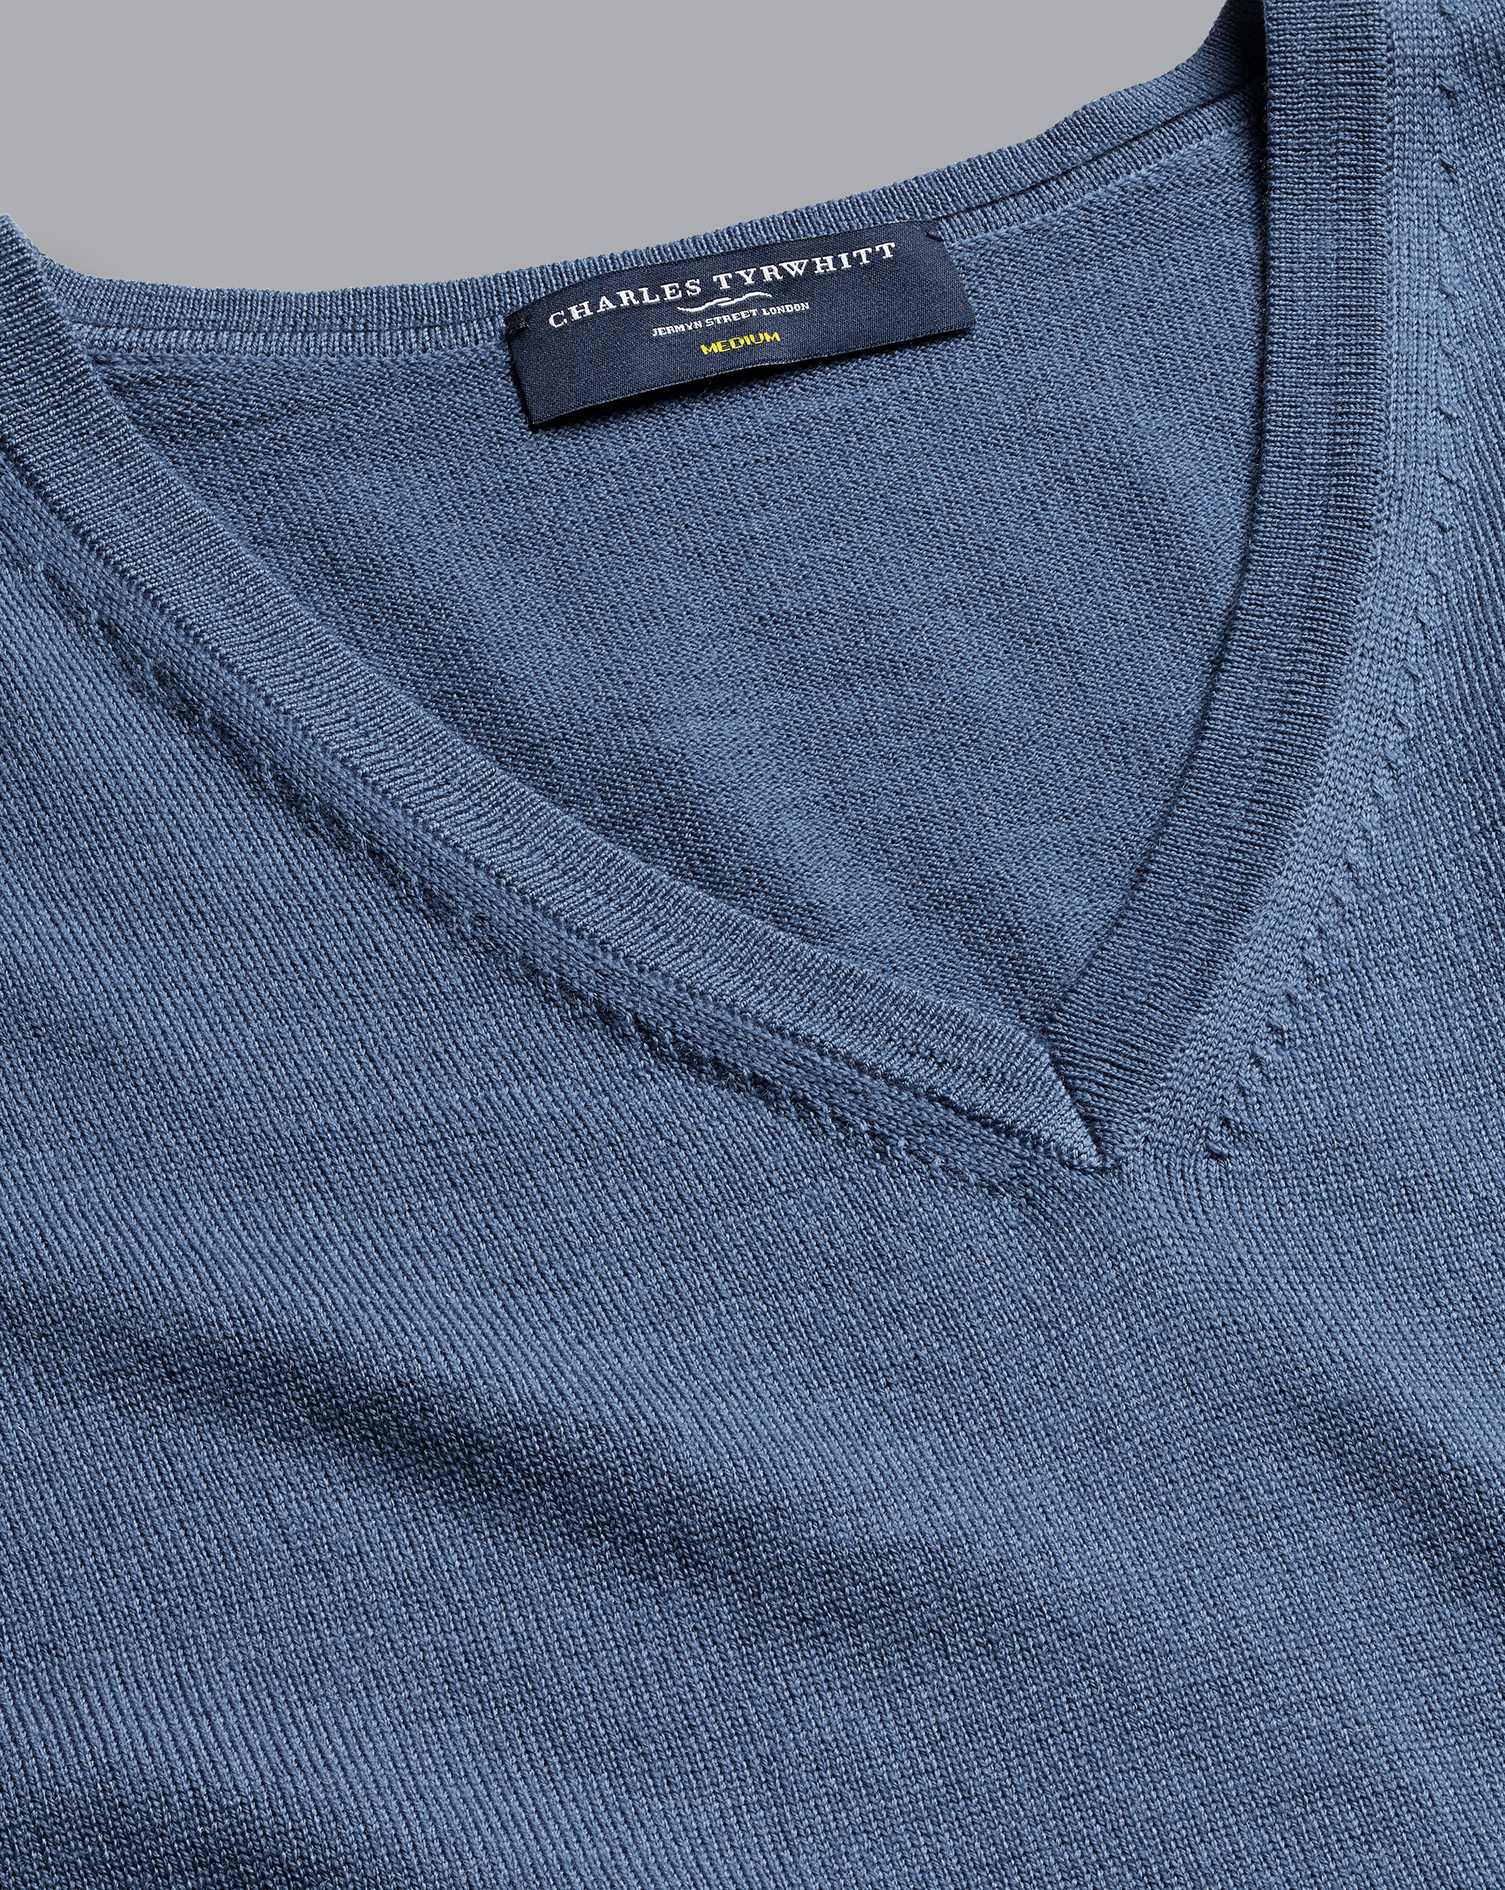 Merino V-Neck Wool Sweater - Steel Blue Size XL
